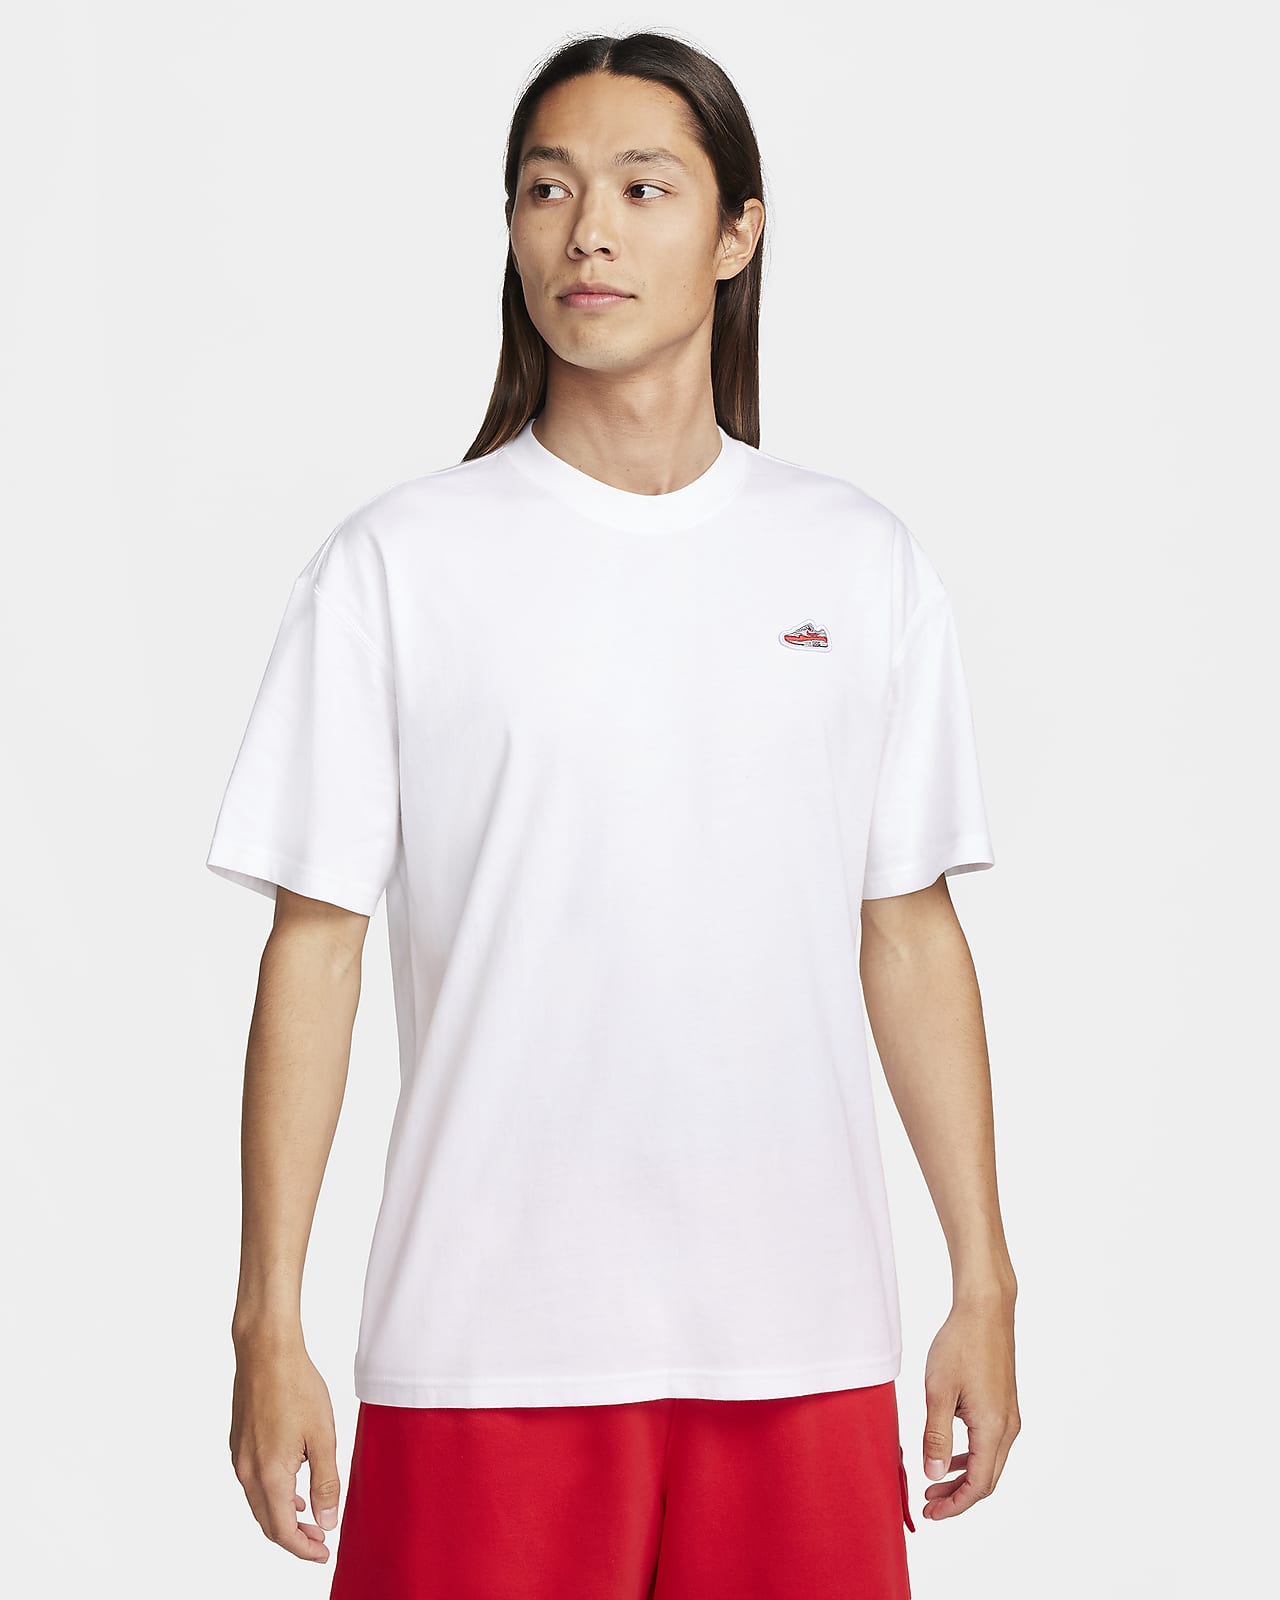 Nike Sportswear 男子T恤